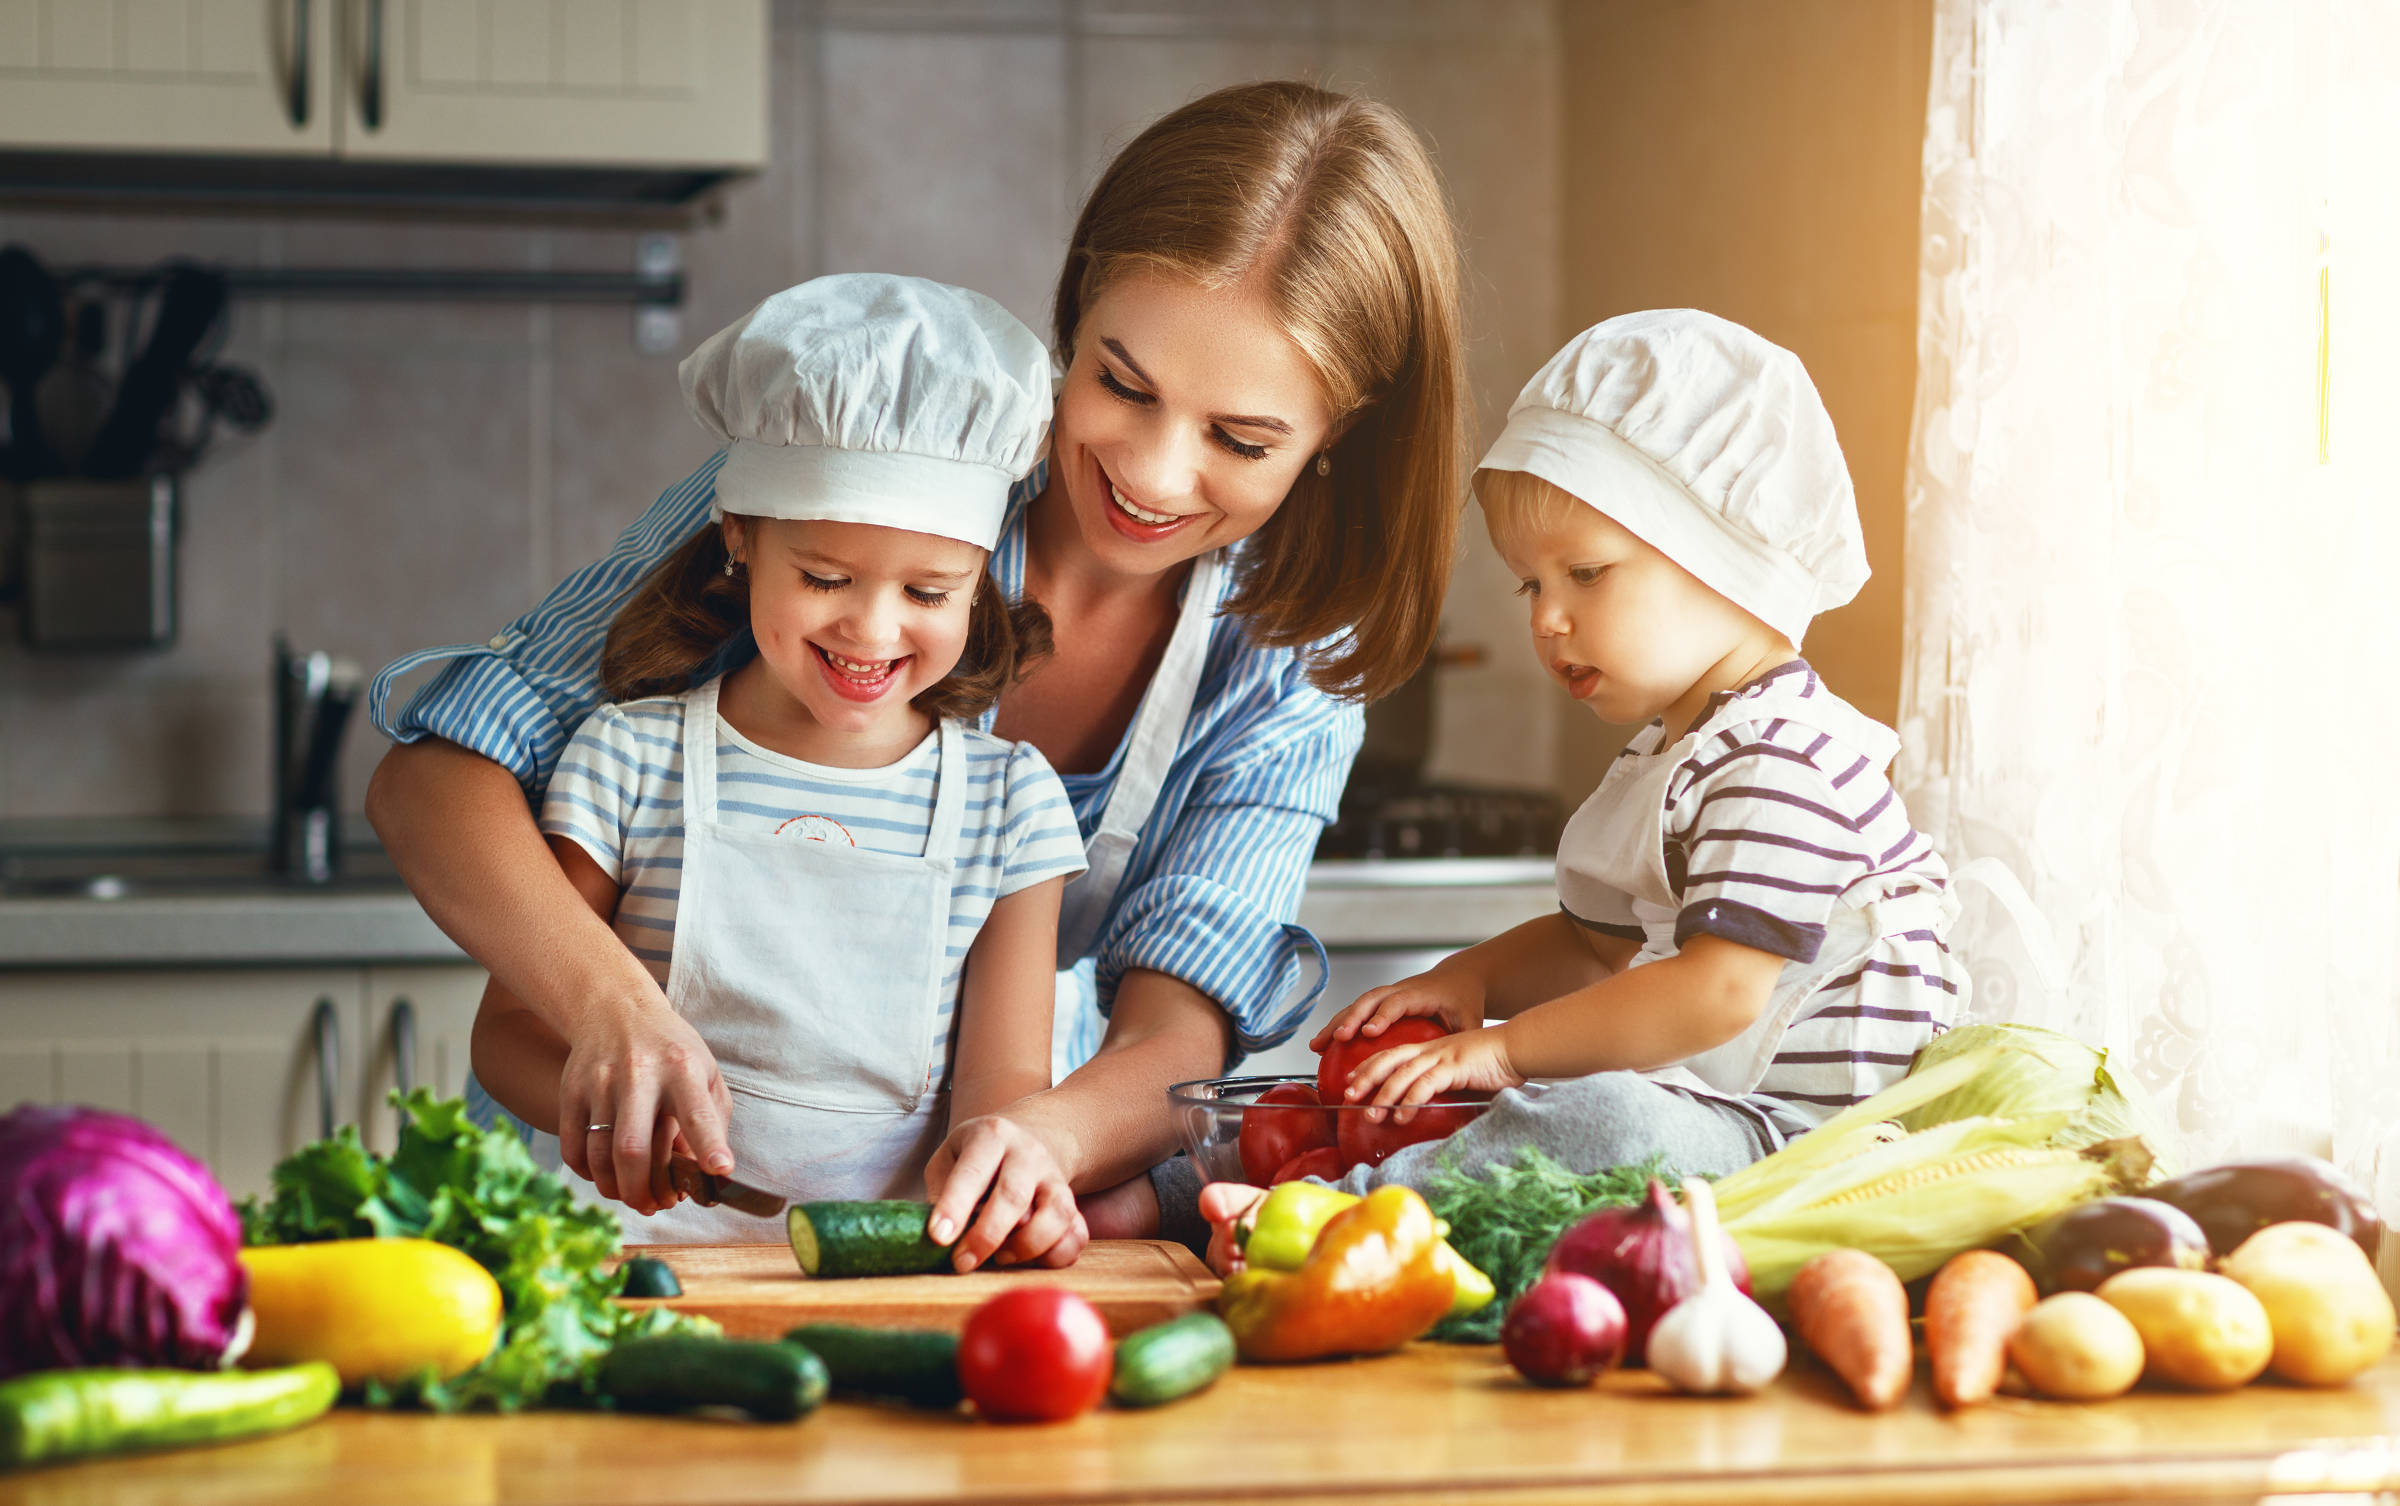 Употребление детьми готовых домашних блюд предоставленных родителями. Кулинария для детей. Готовка с детьми. Кухня для детей. Мама с ребенком на кухне.